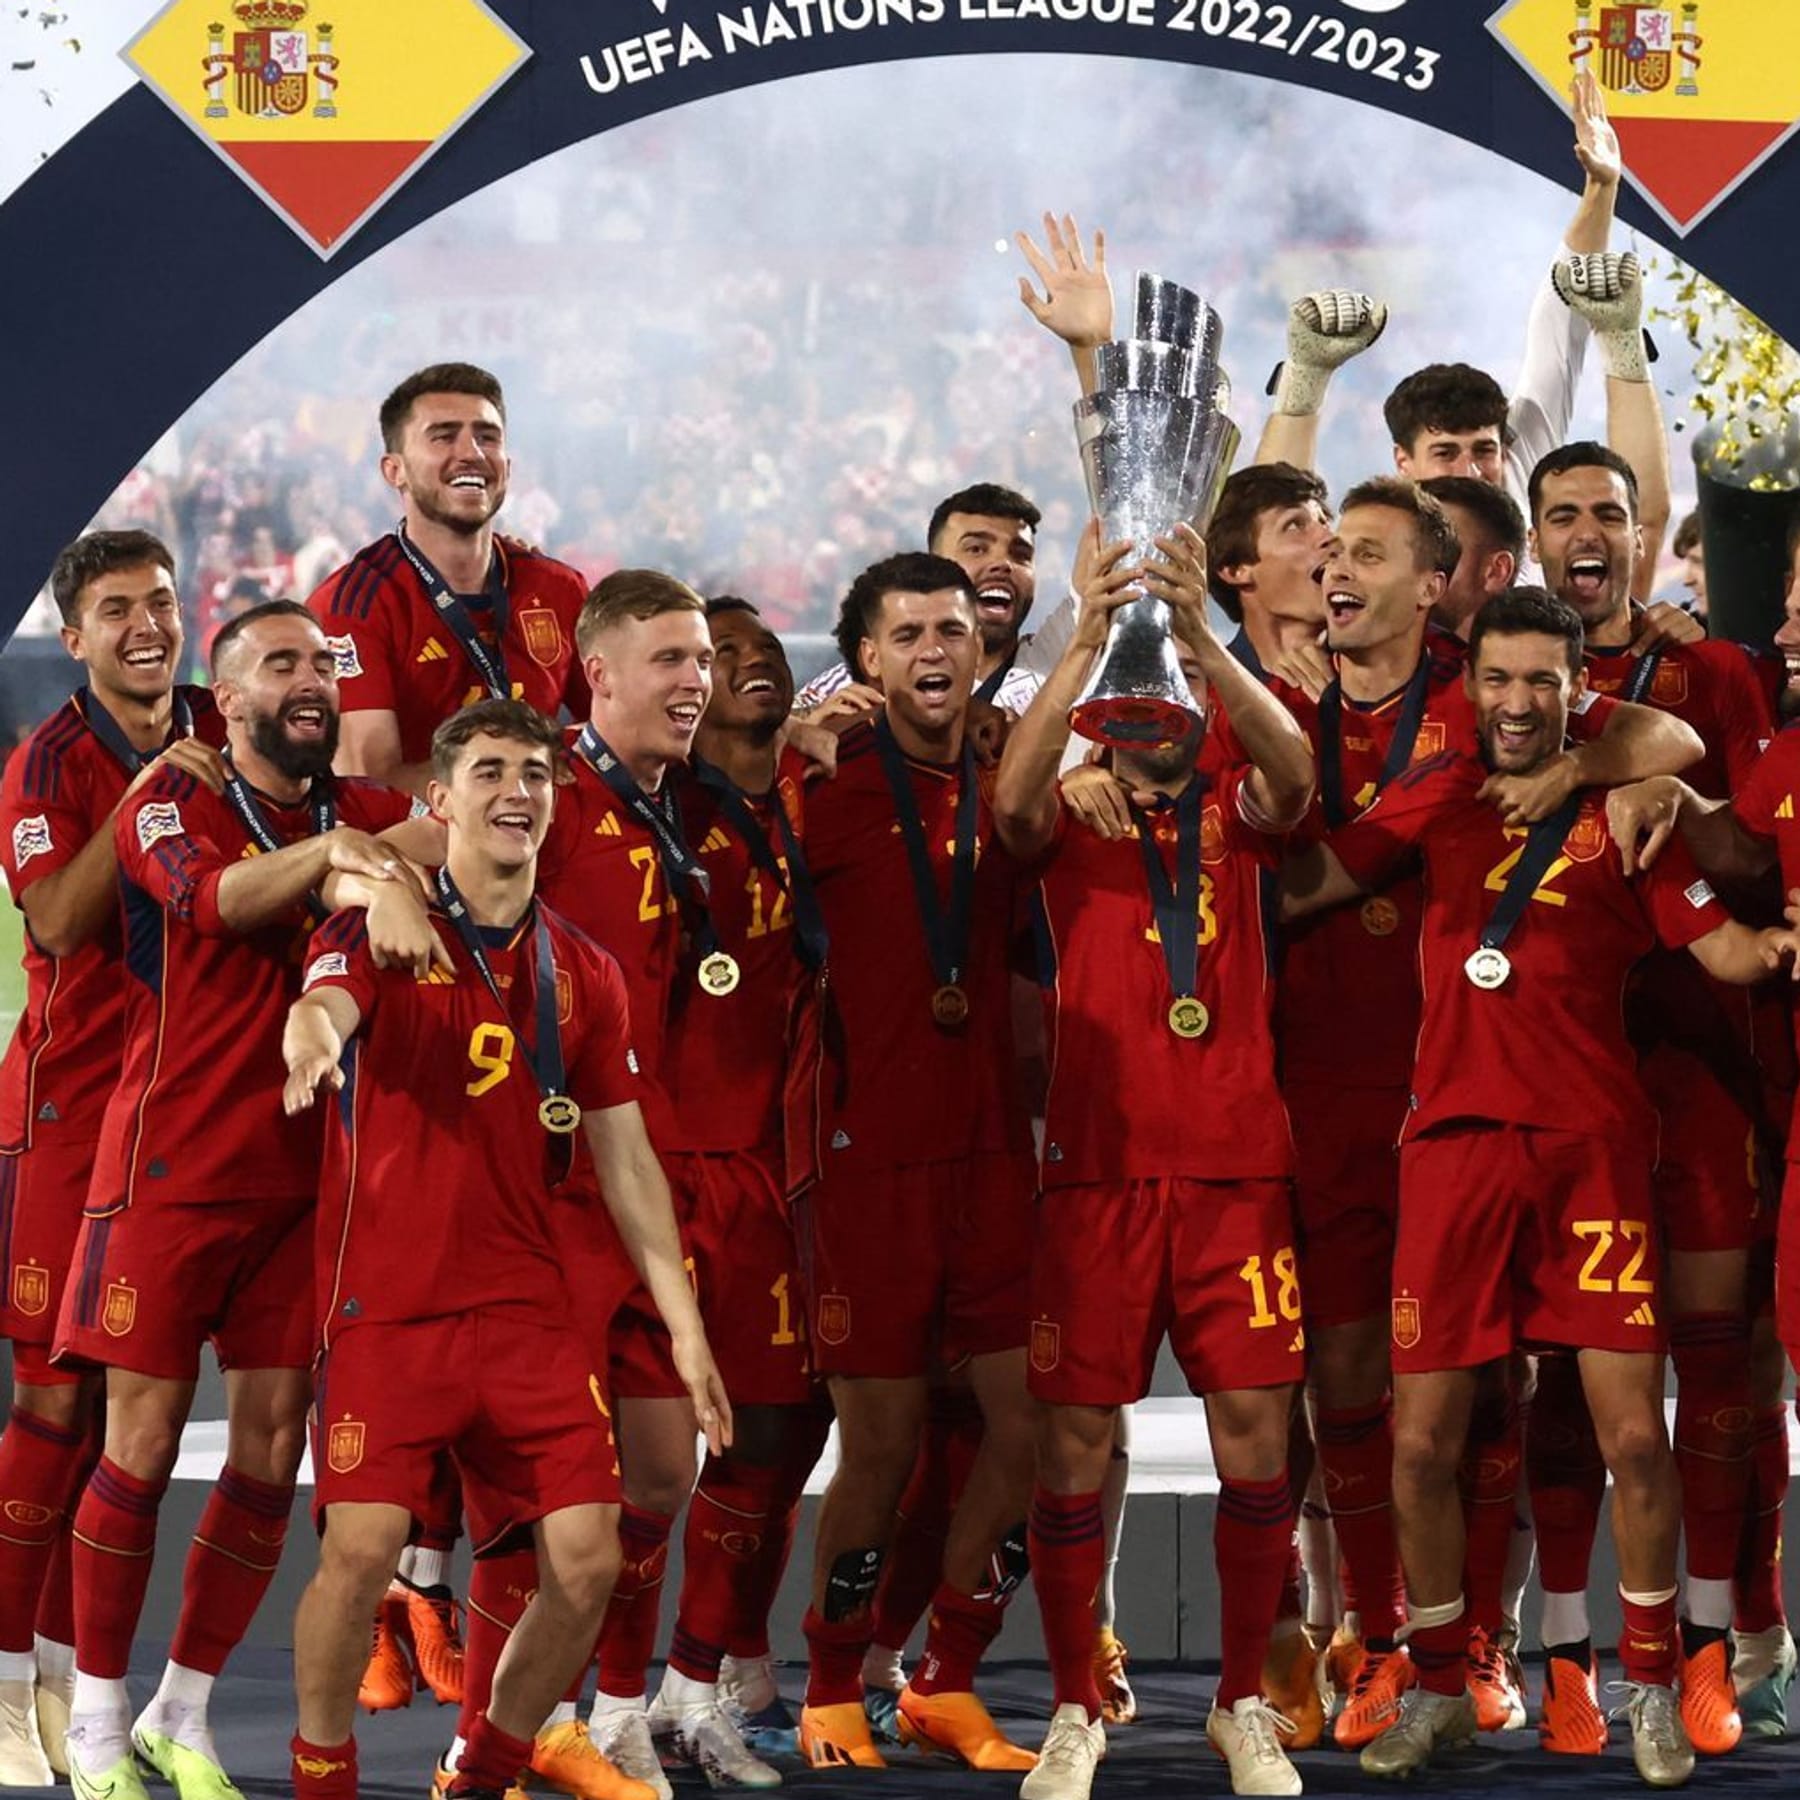 Nations League Spanien gewinnt Finale gegen Kroatien im Elfmeterschießen